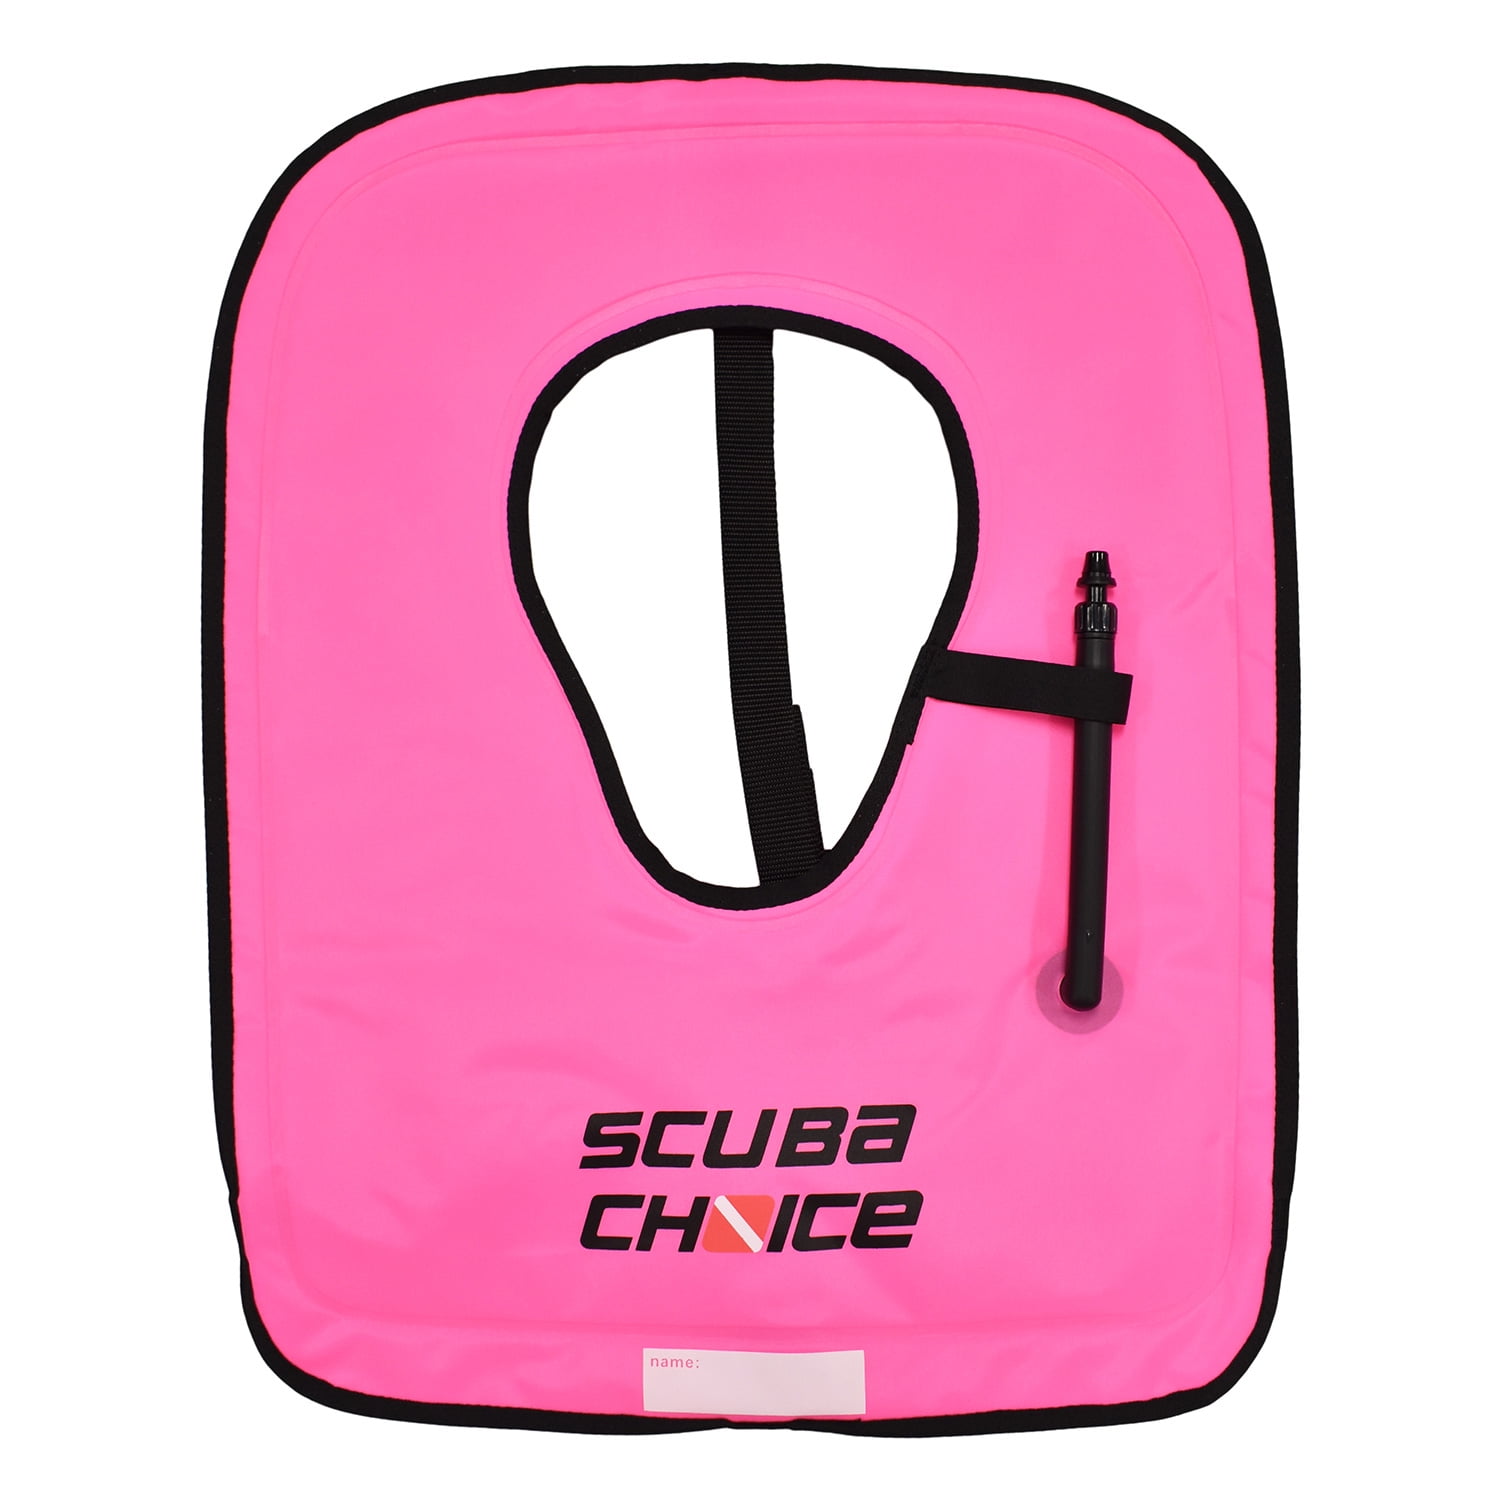 Details about   Scuba Diving Snorkeling Adult Purple Snorkel Vest w/ Name Box Size Large 